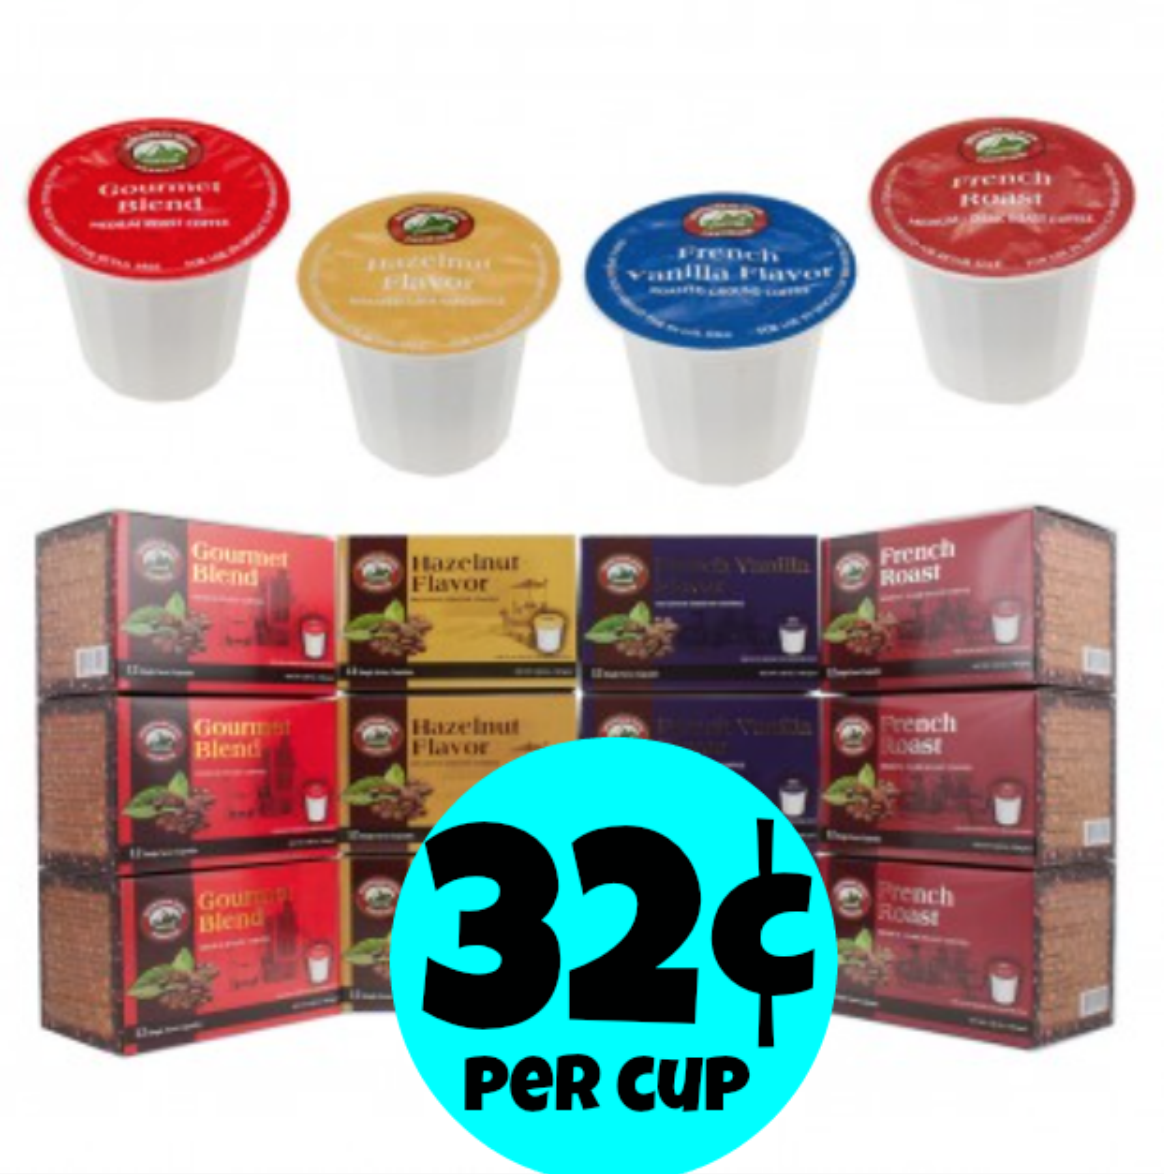 http://www.thebinderladies.com/2015/02/dealgenius-com-144-premium-k-cups-only.html#.VOKOdIfduyM